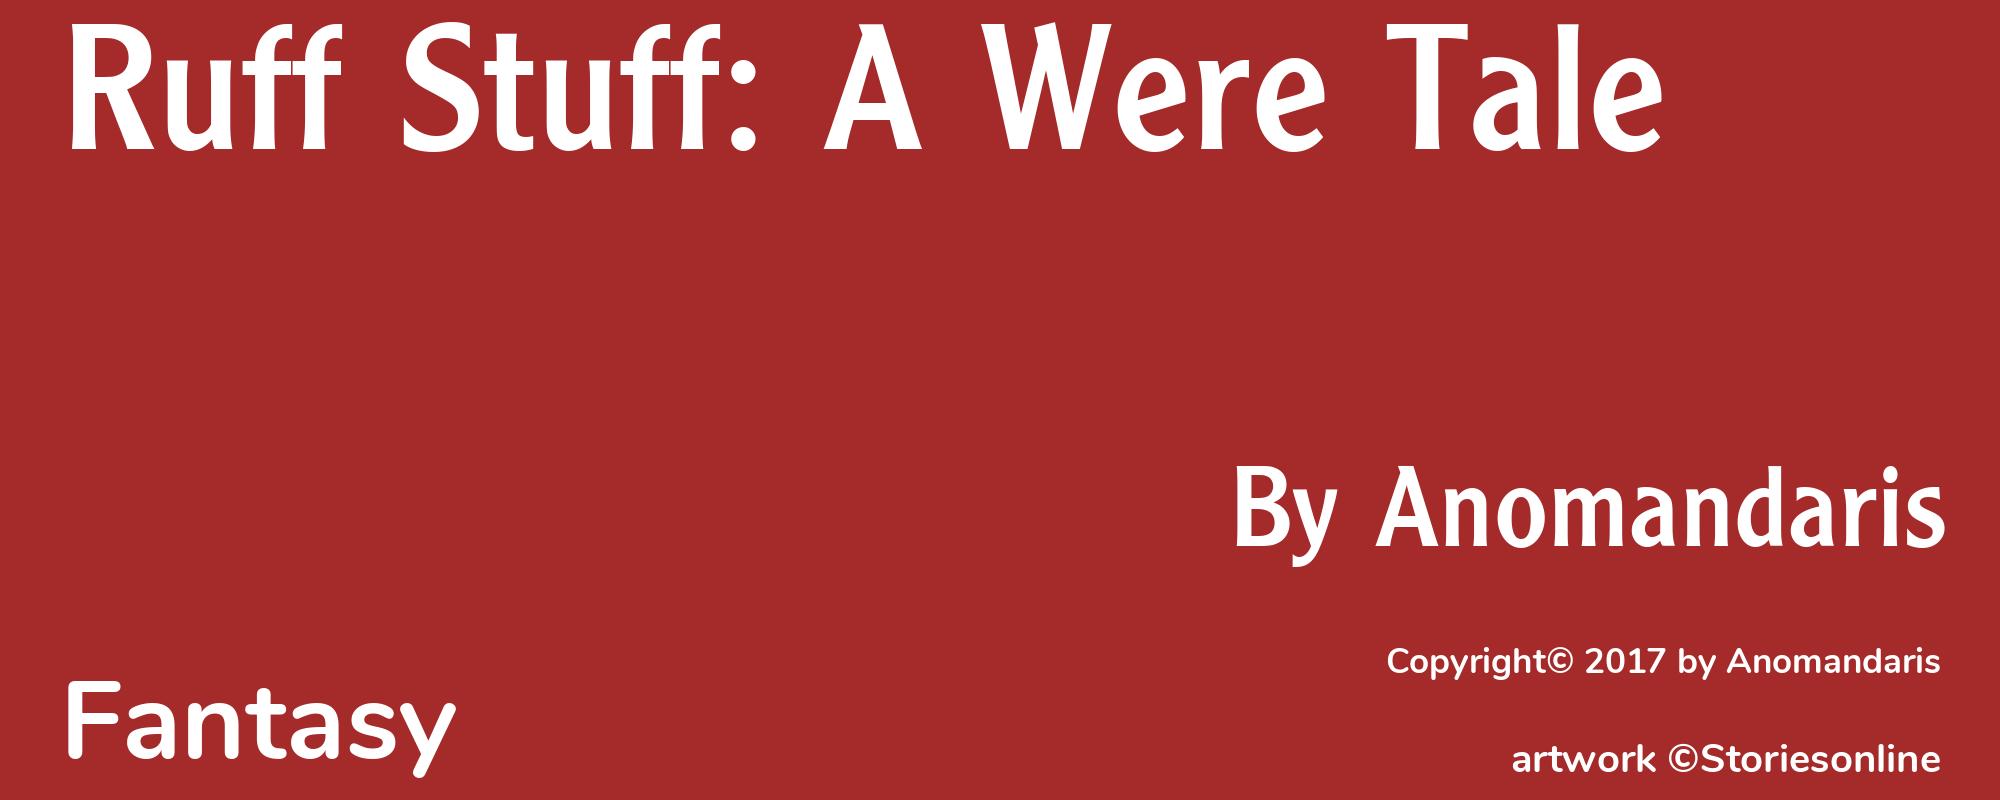 Ruff Stuff: A Were Tale - Cover